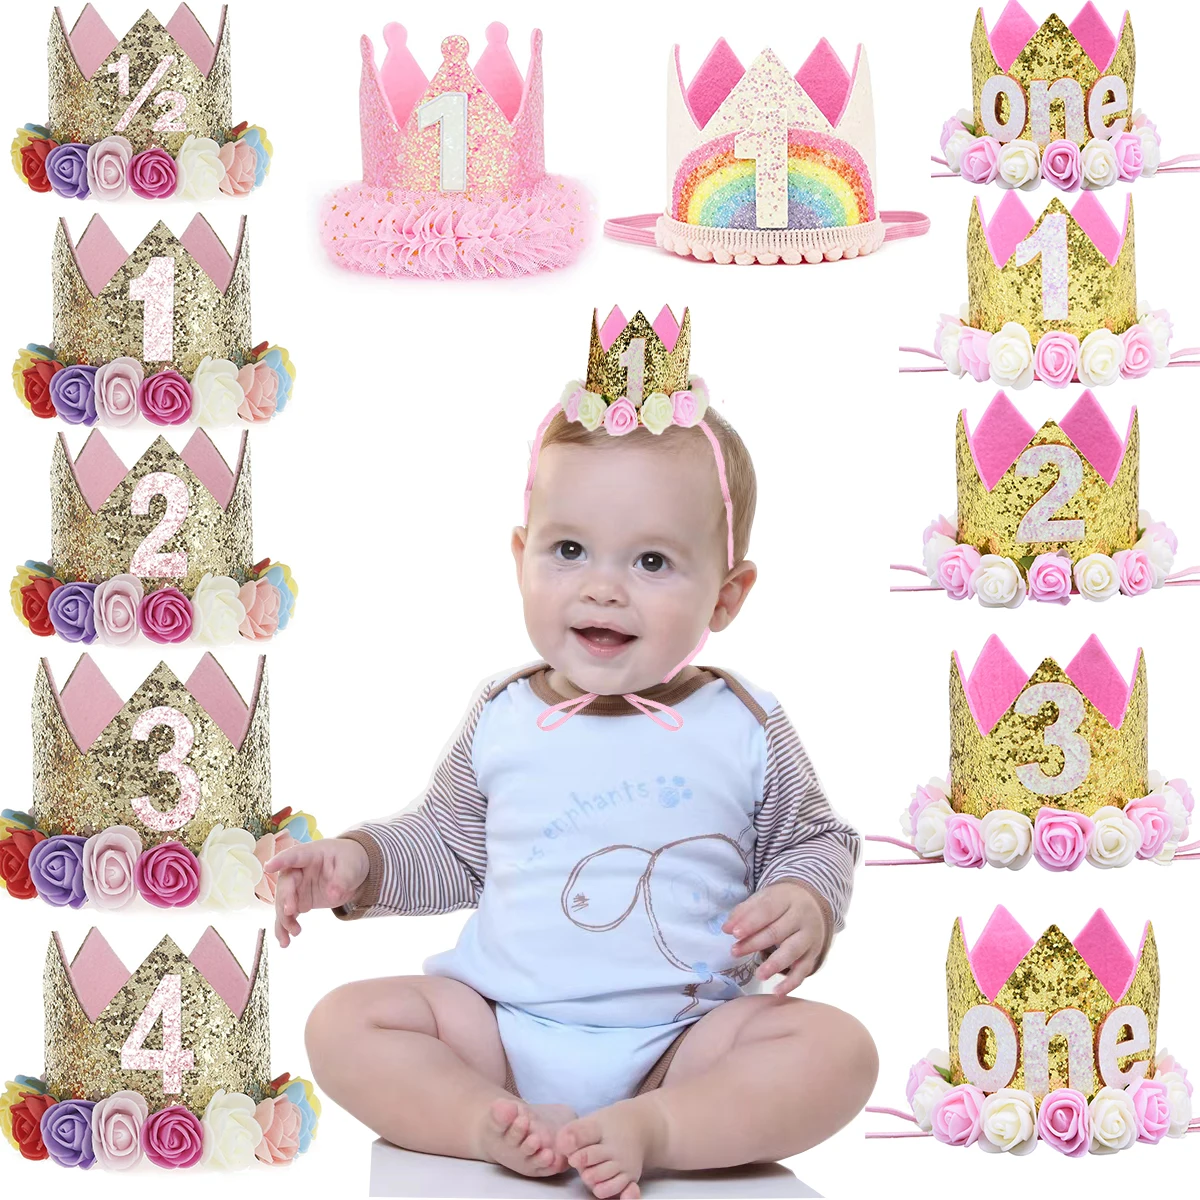  Decoraciones de primer cumpleaños para niña con corona,  decoraciones de primer cumpleaños para niña de 1 año, suministros de fiesta  con temática de princesa, un cartel para silla alta, adorno para